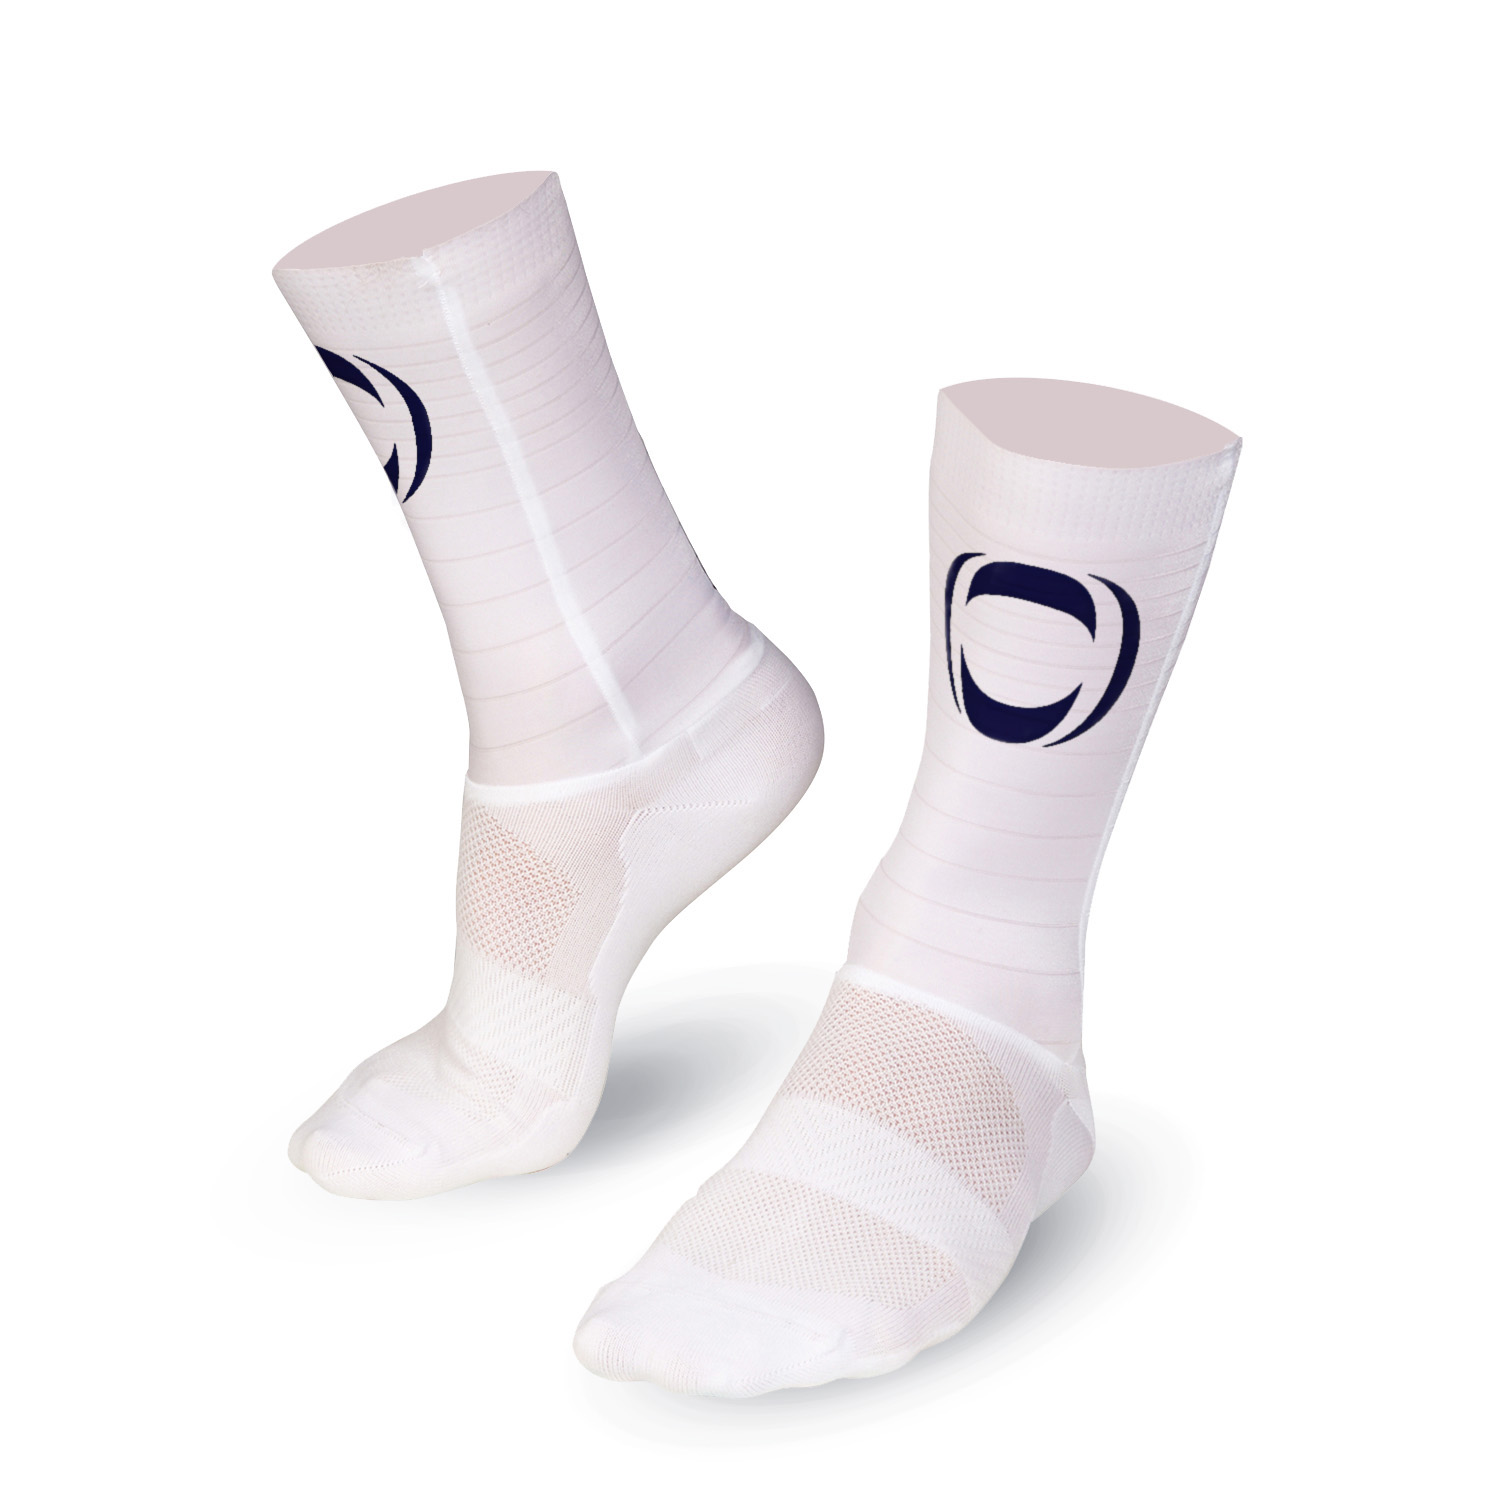 Ineos Grenadiers aero socks white